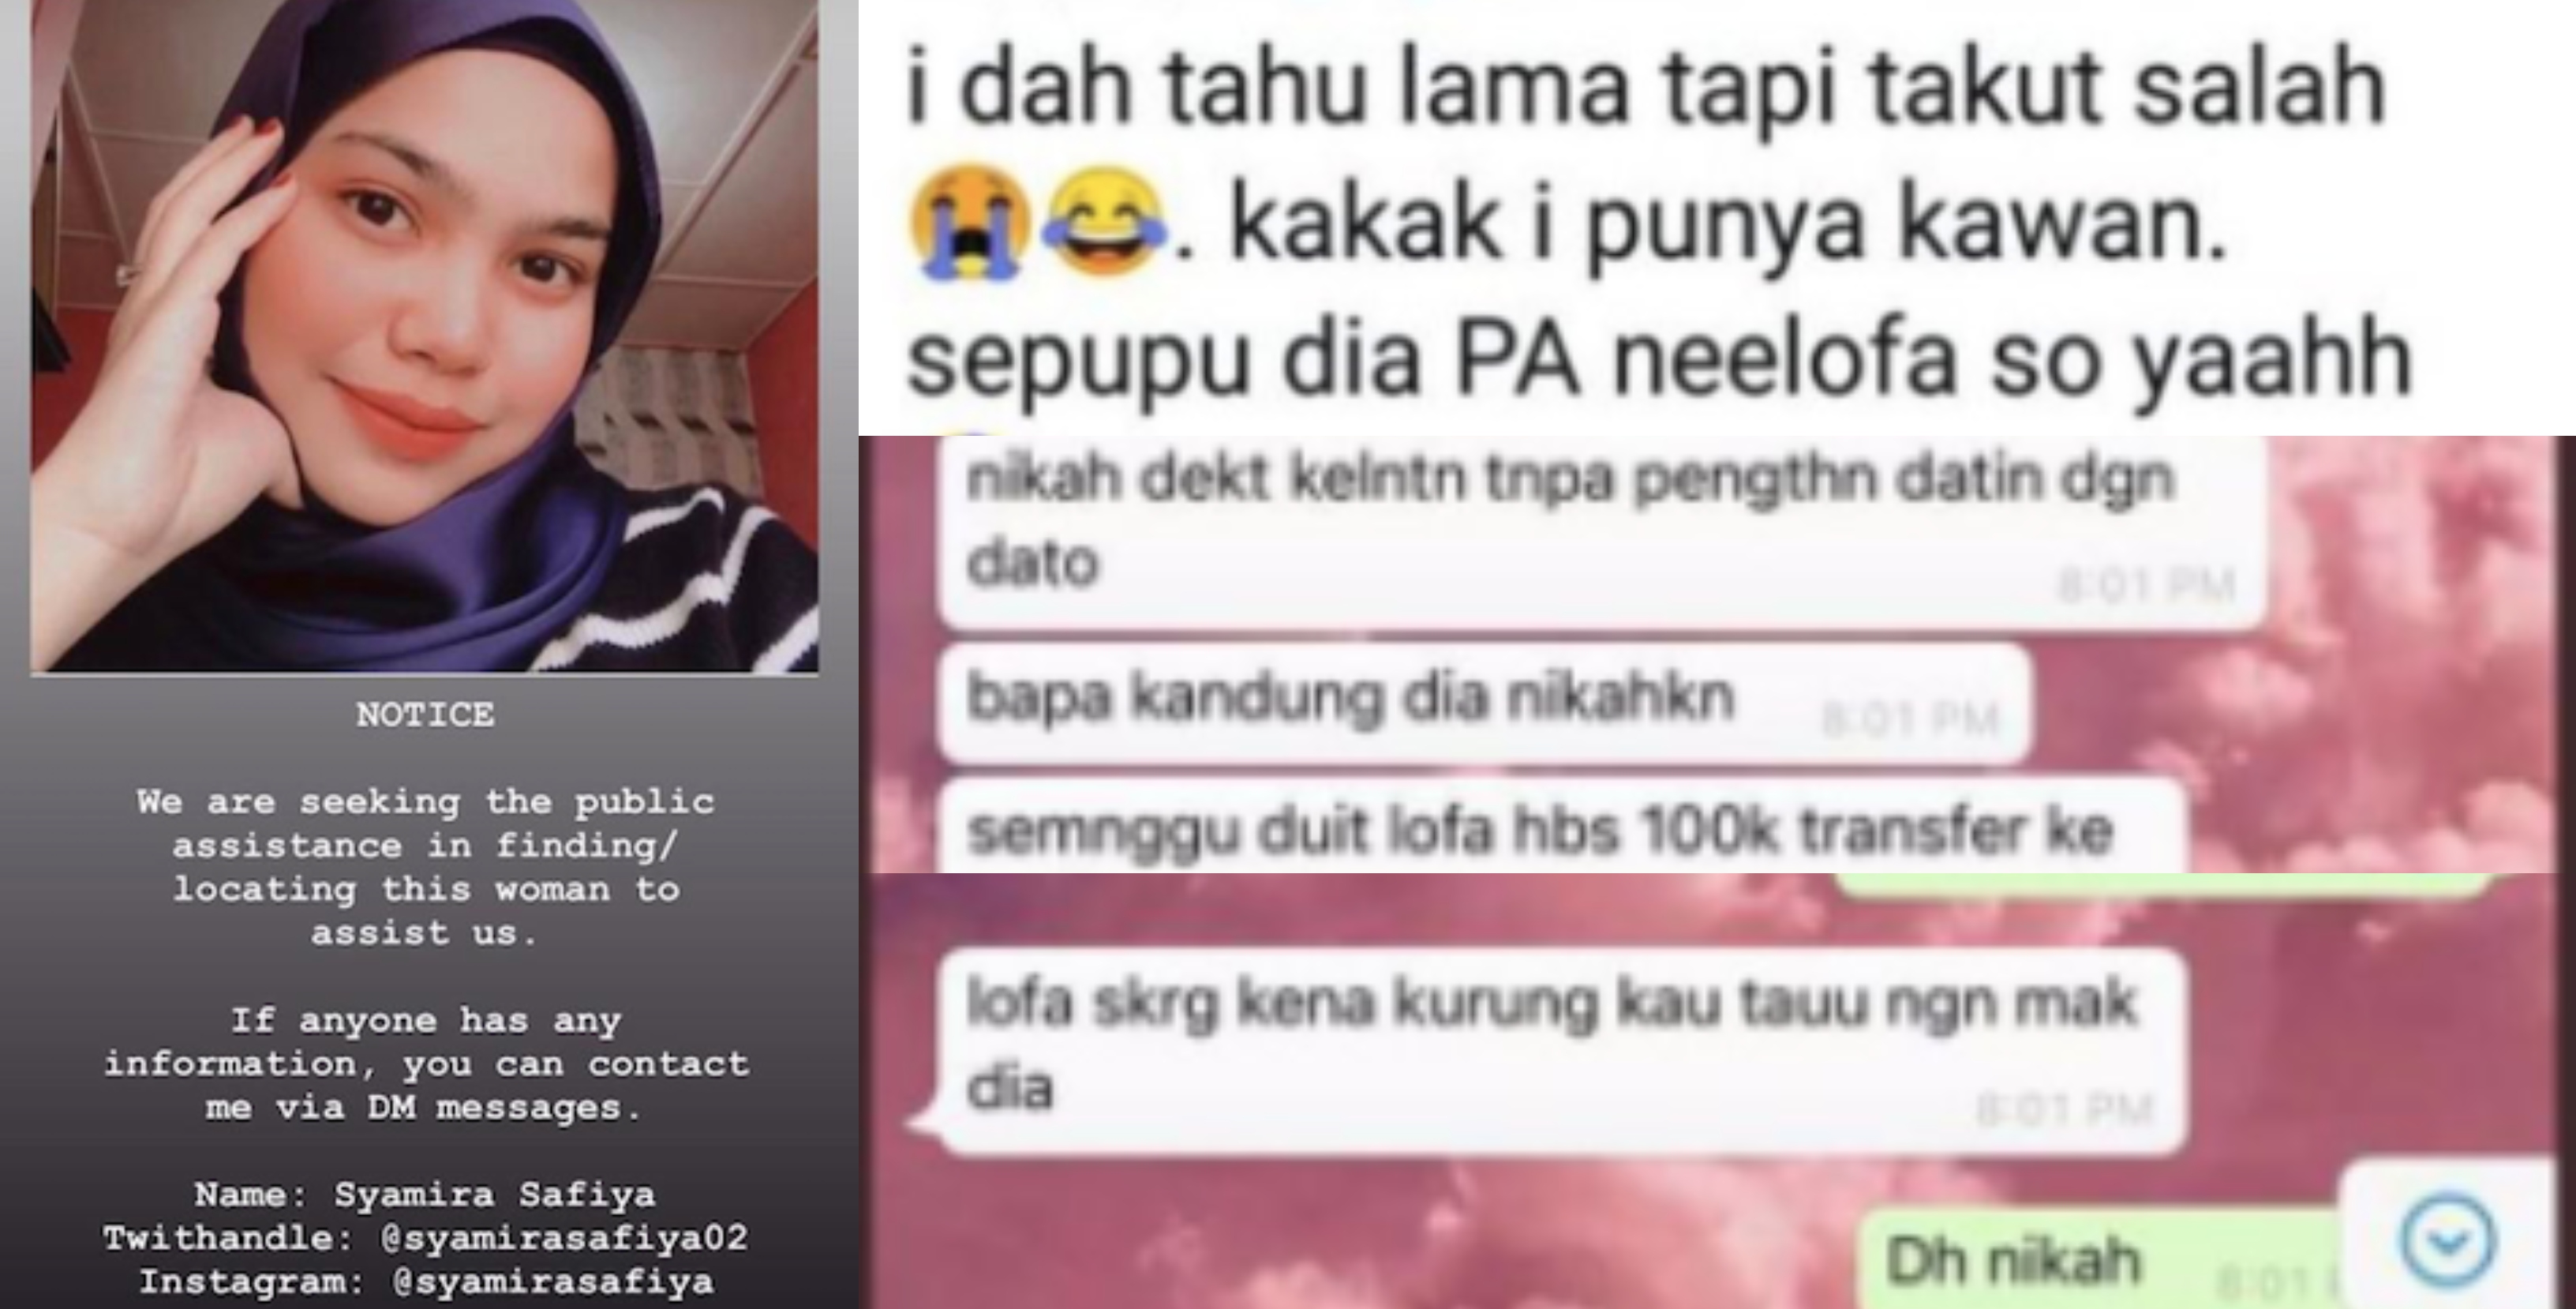 PA Neelofa Cari Individu Sebar Berita Palsu Nikah Di Kelantan, Terkena Minyak Pengasih